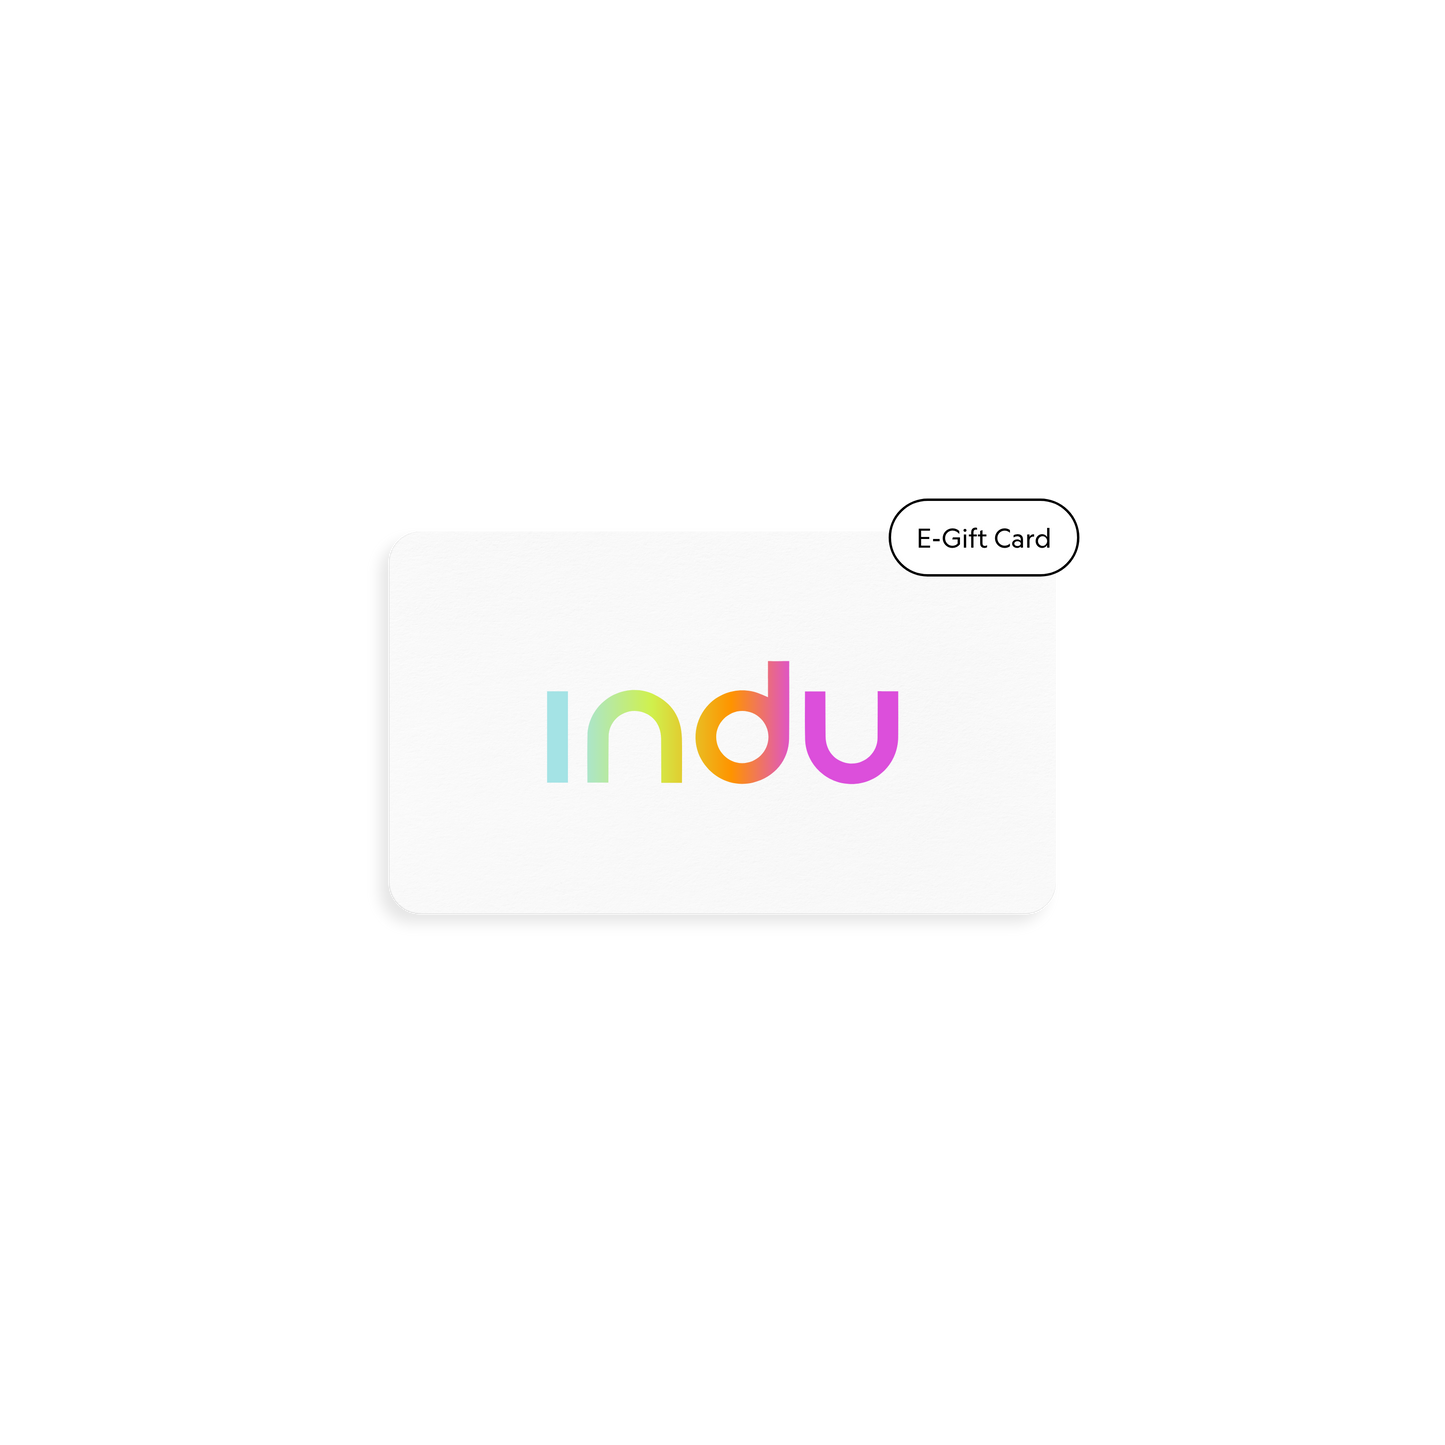 Indu E-Gift Card